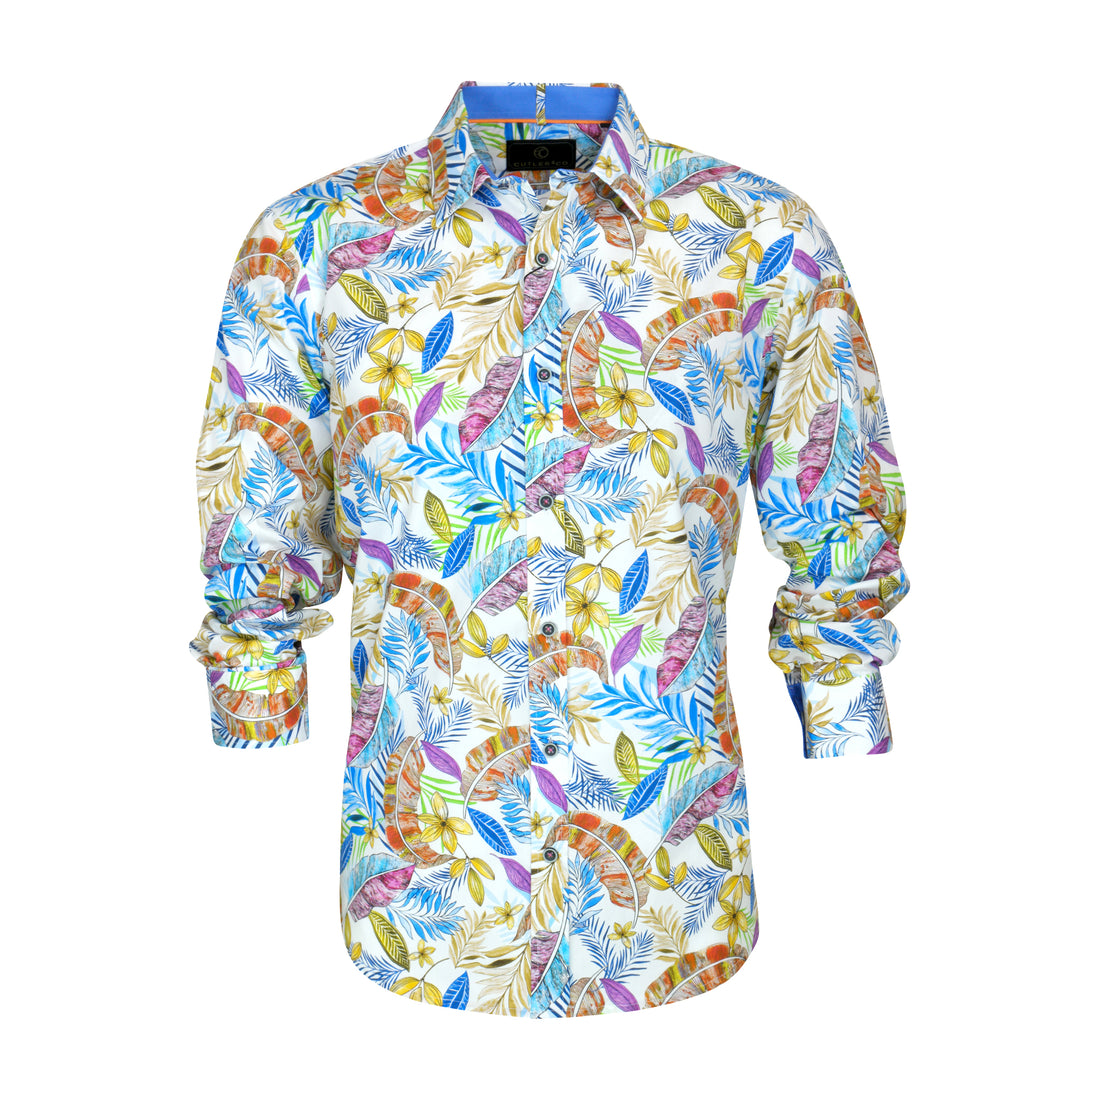 Cutler & Co Blake L/S Shirt | Nectar